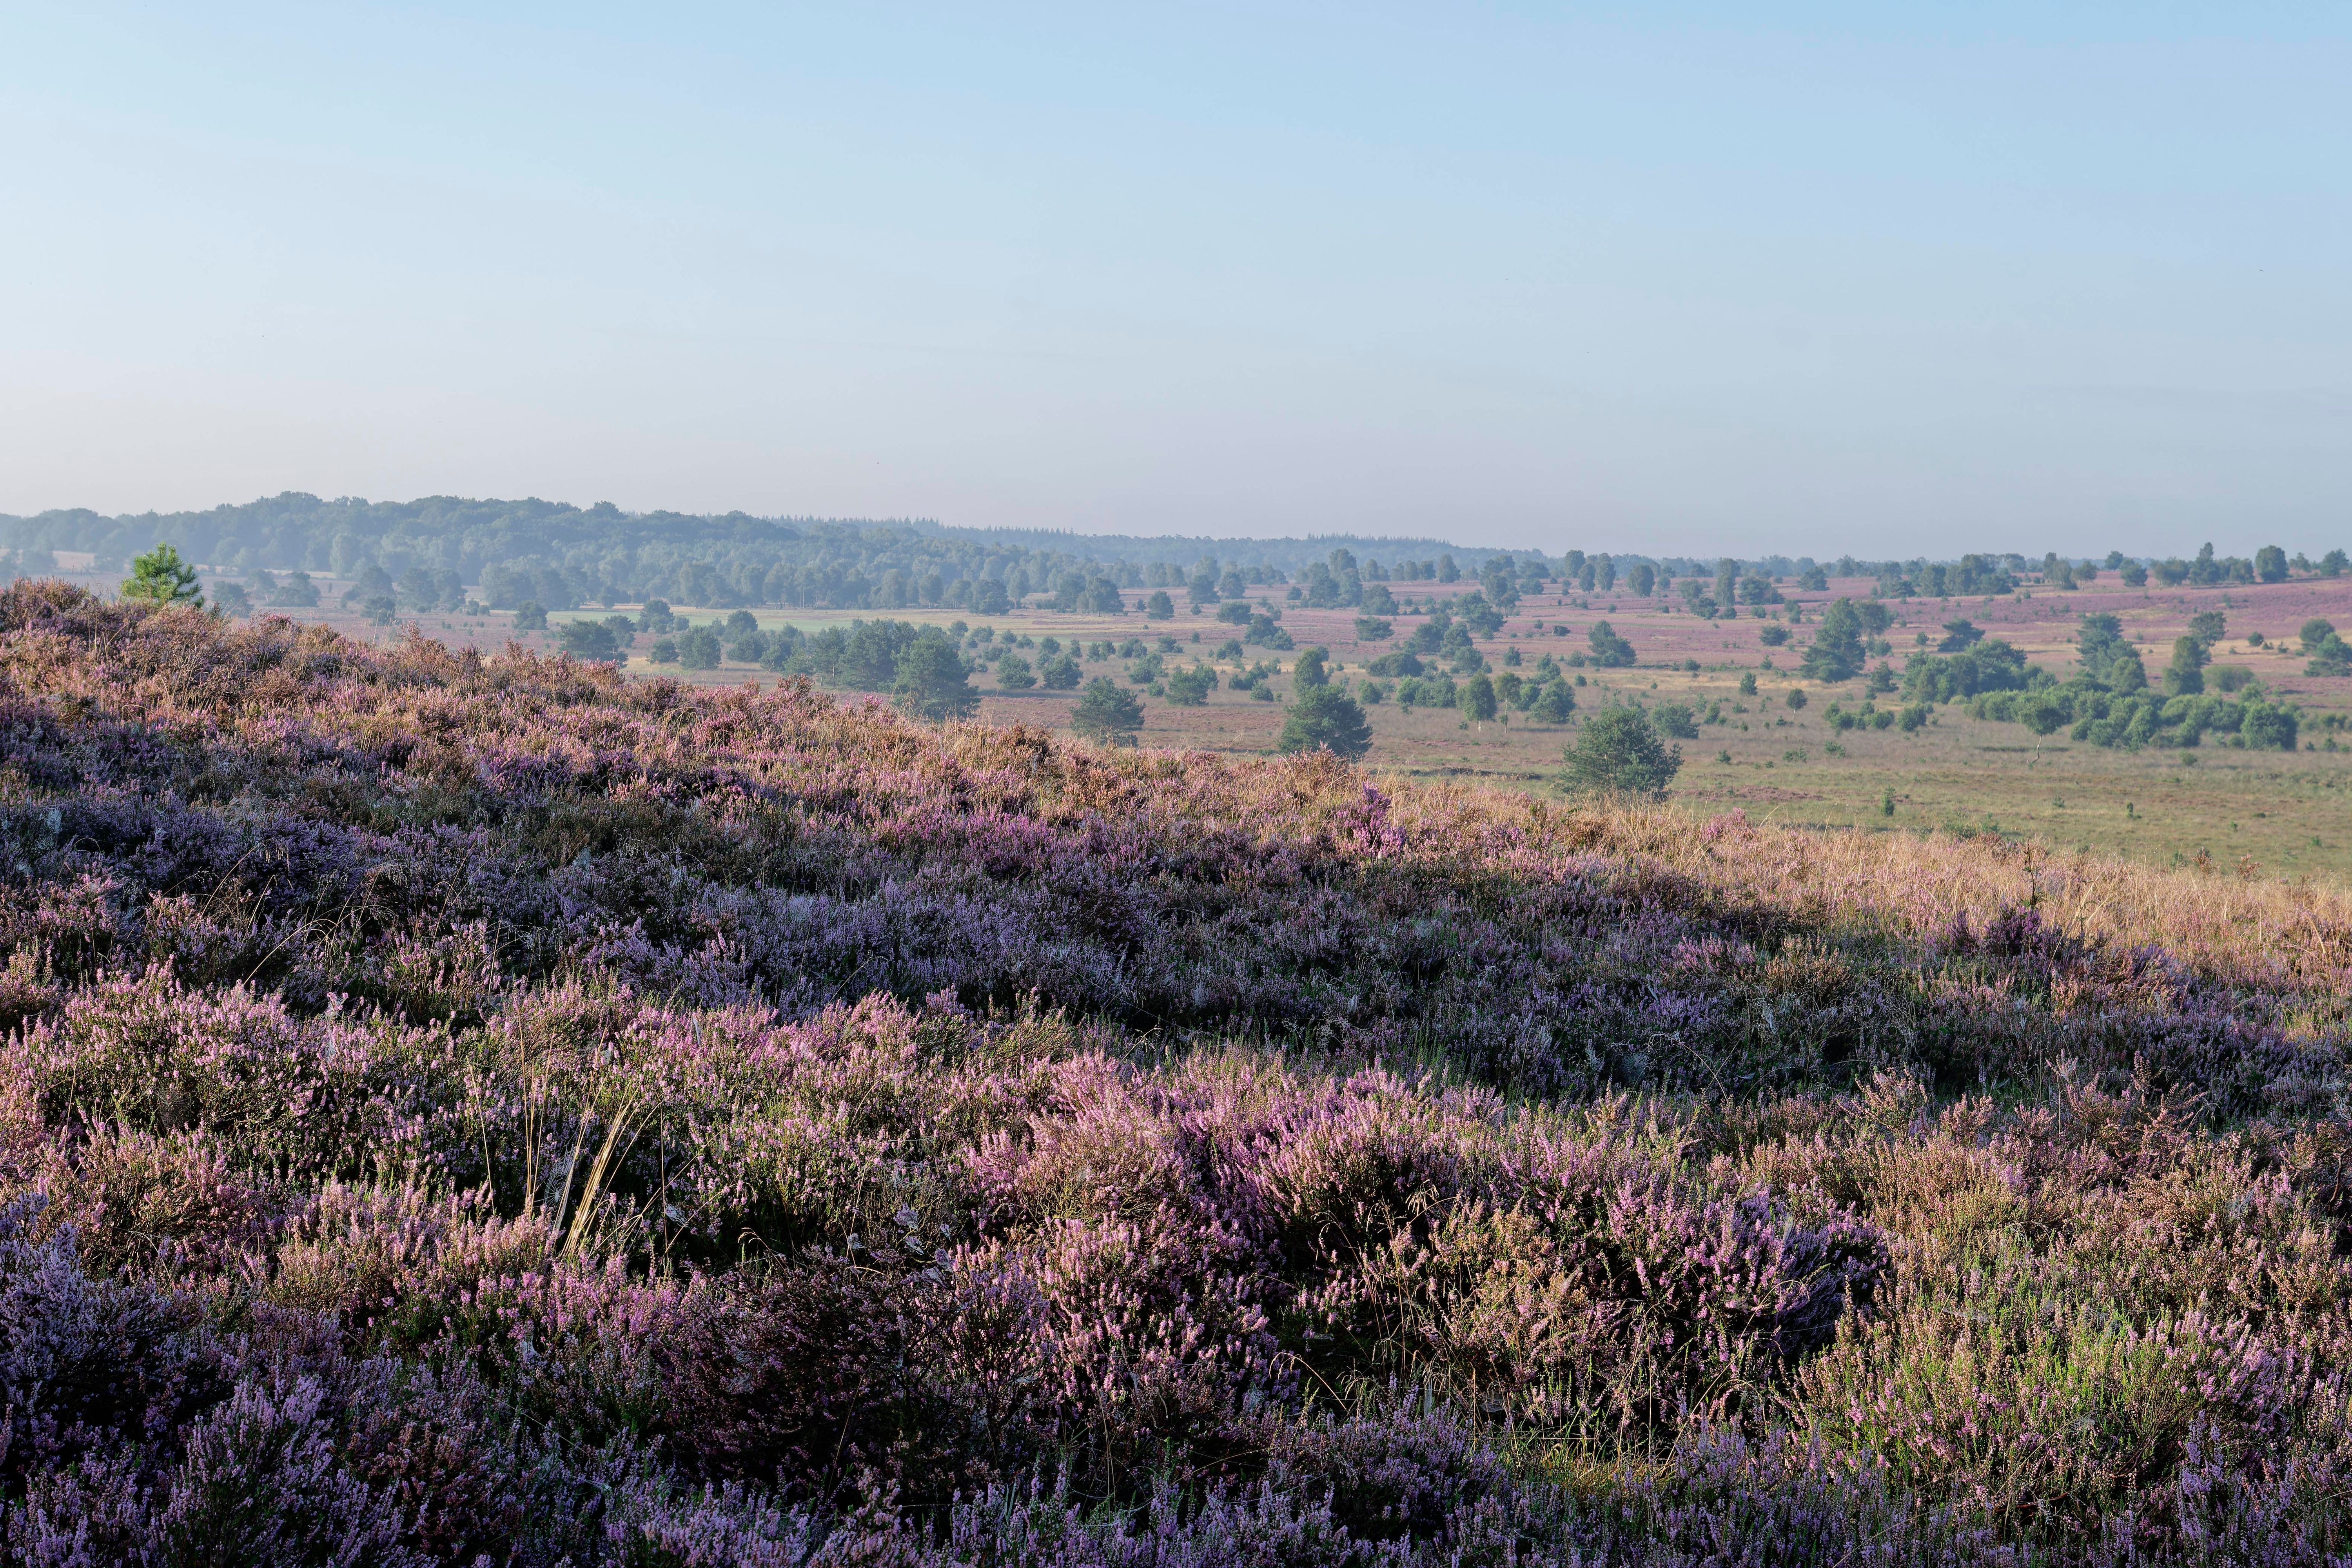 Die Lüneburger Heide ist eine der größten zusammenhängenden Heidelandschaften in Mitteleuropa. Sie erstreckt sich über eine Fläche von rund 7.000 Quadratkilometern und ist besonders bekannt für ihre blühenden Heidefelder im Spätsommer, die eine atemberaubende lila-pinkfarbene Landschaft schaffen.